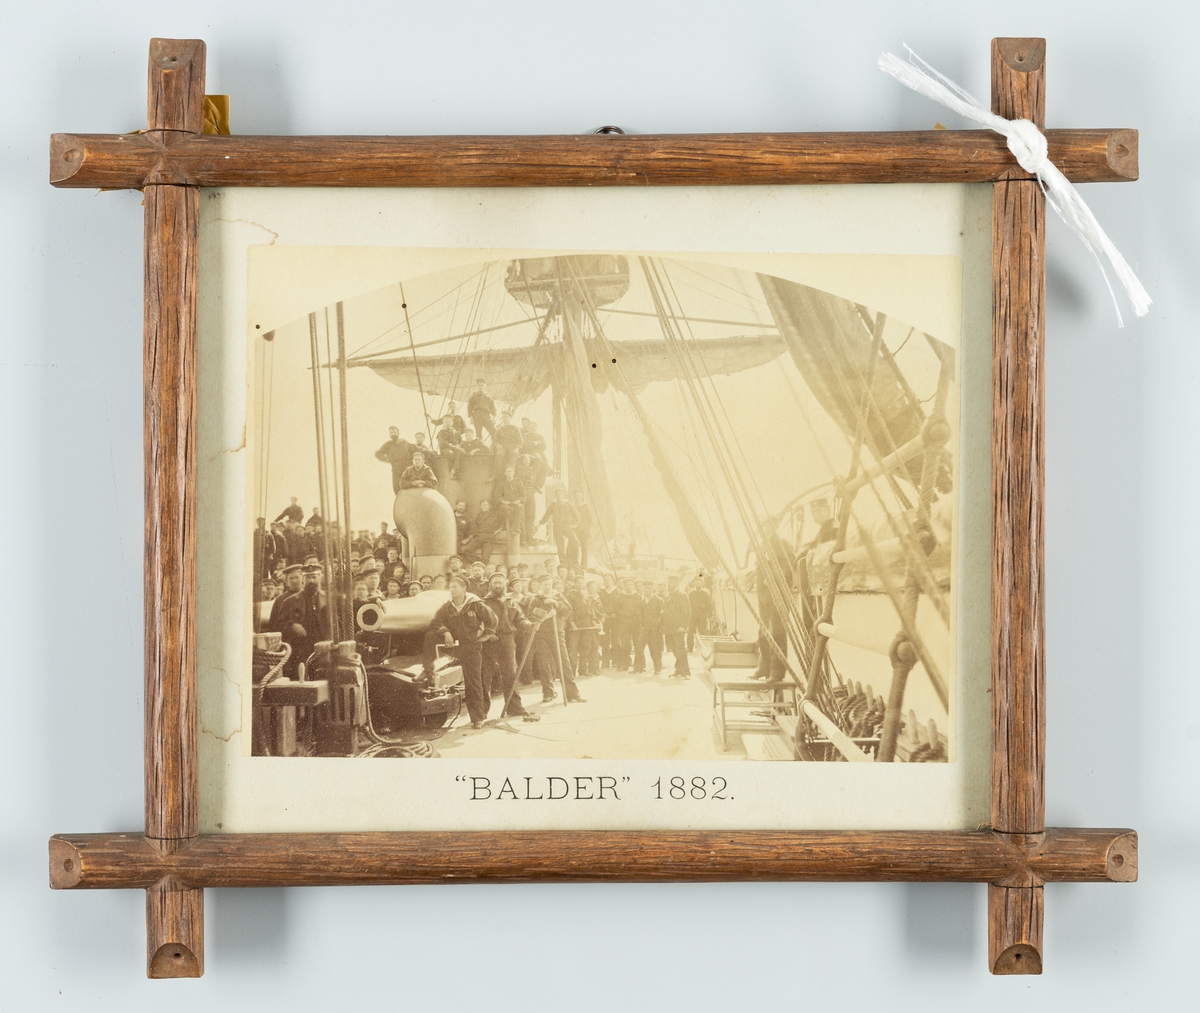 Denna grupporträtt visar besättningen ombord på korvetten Balder år 1882.